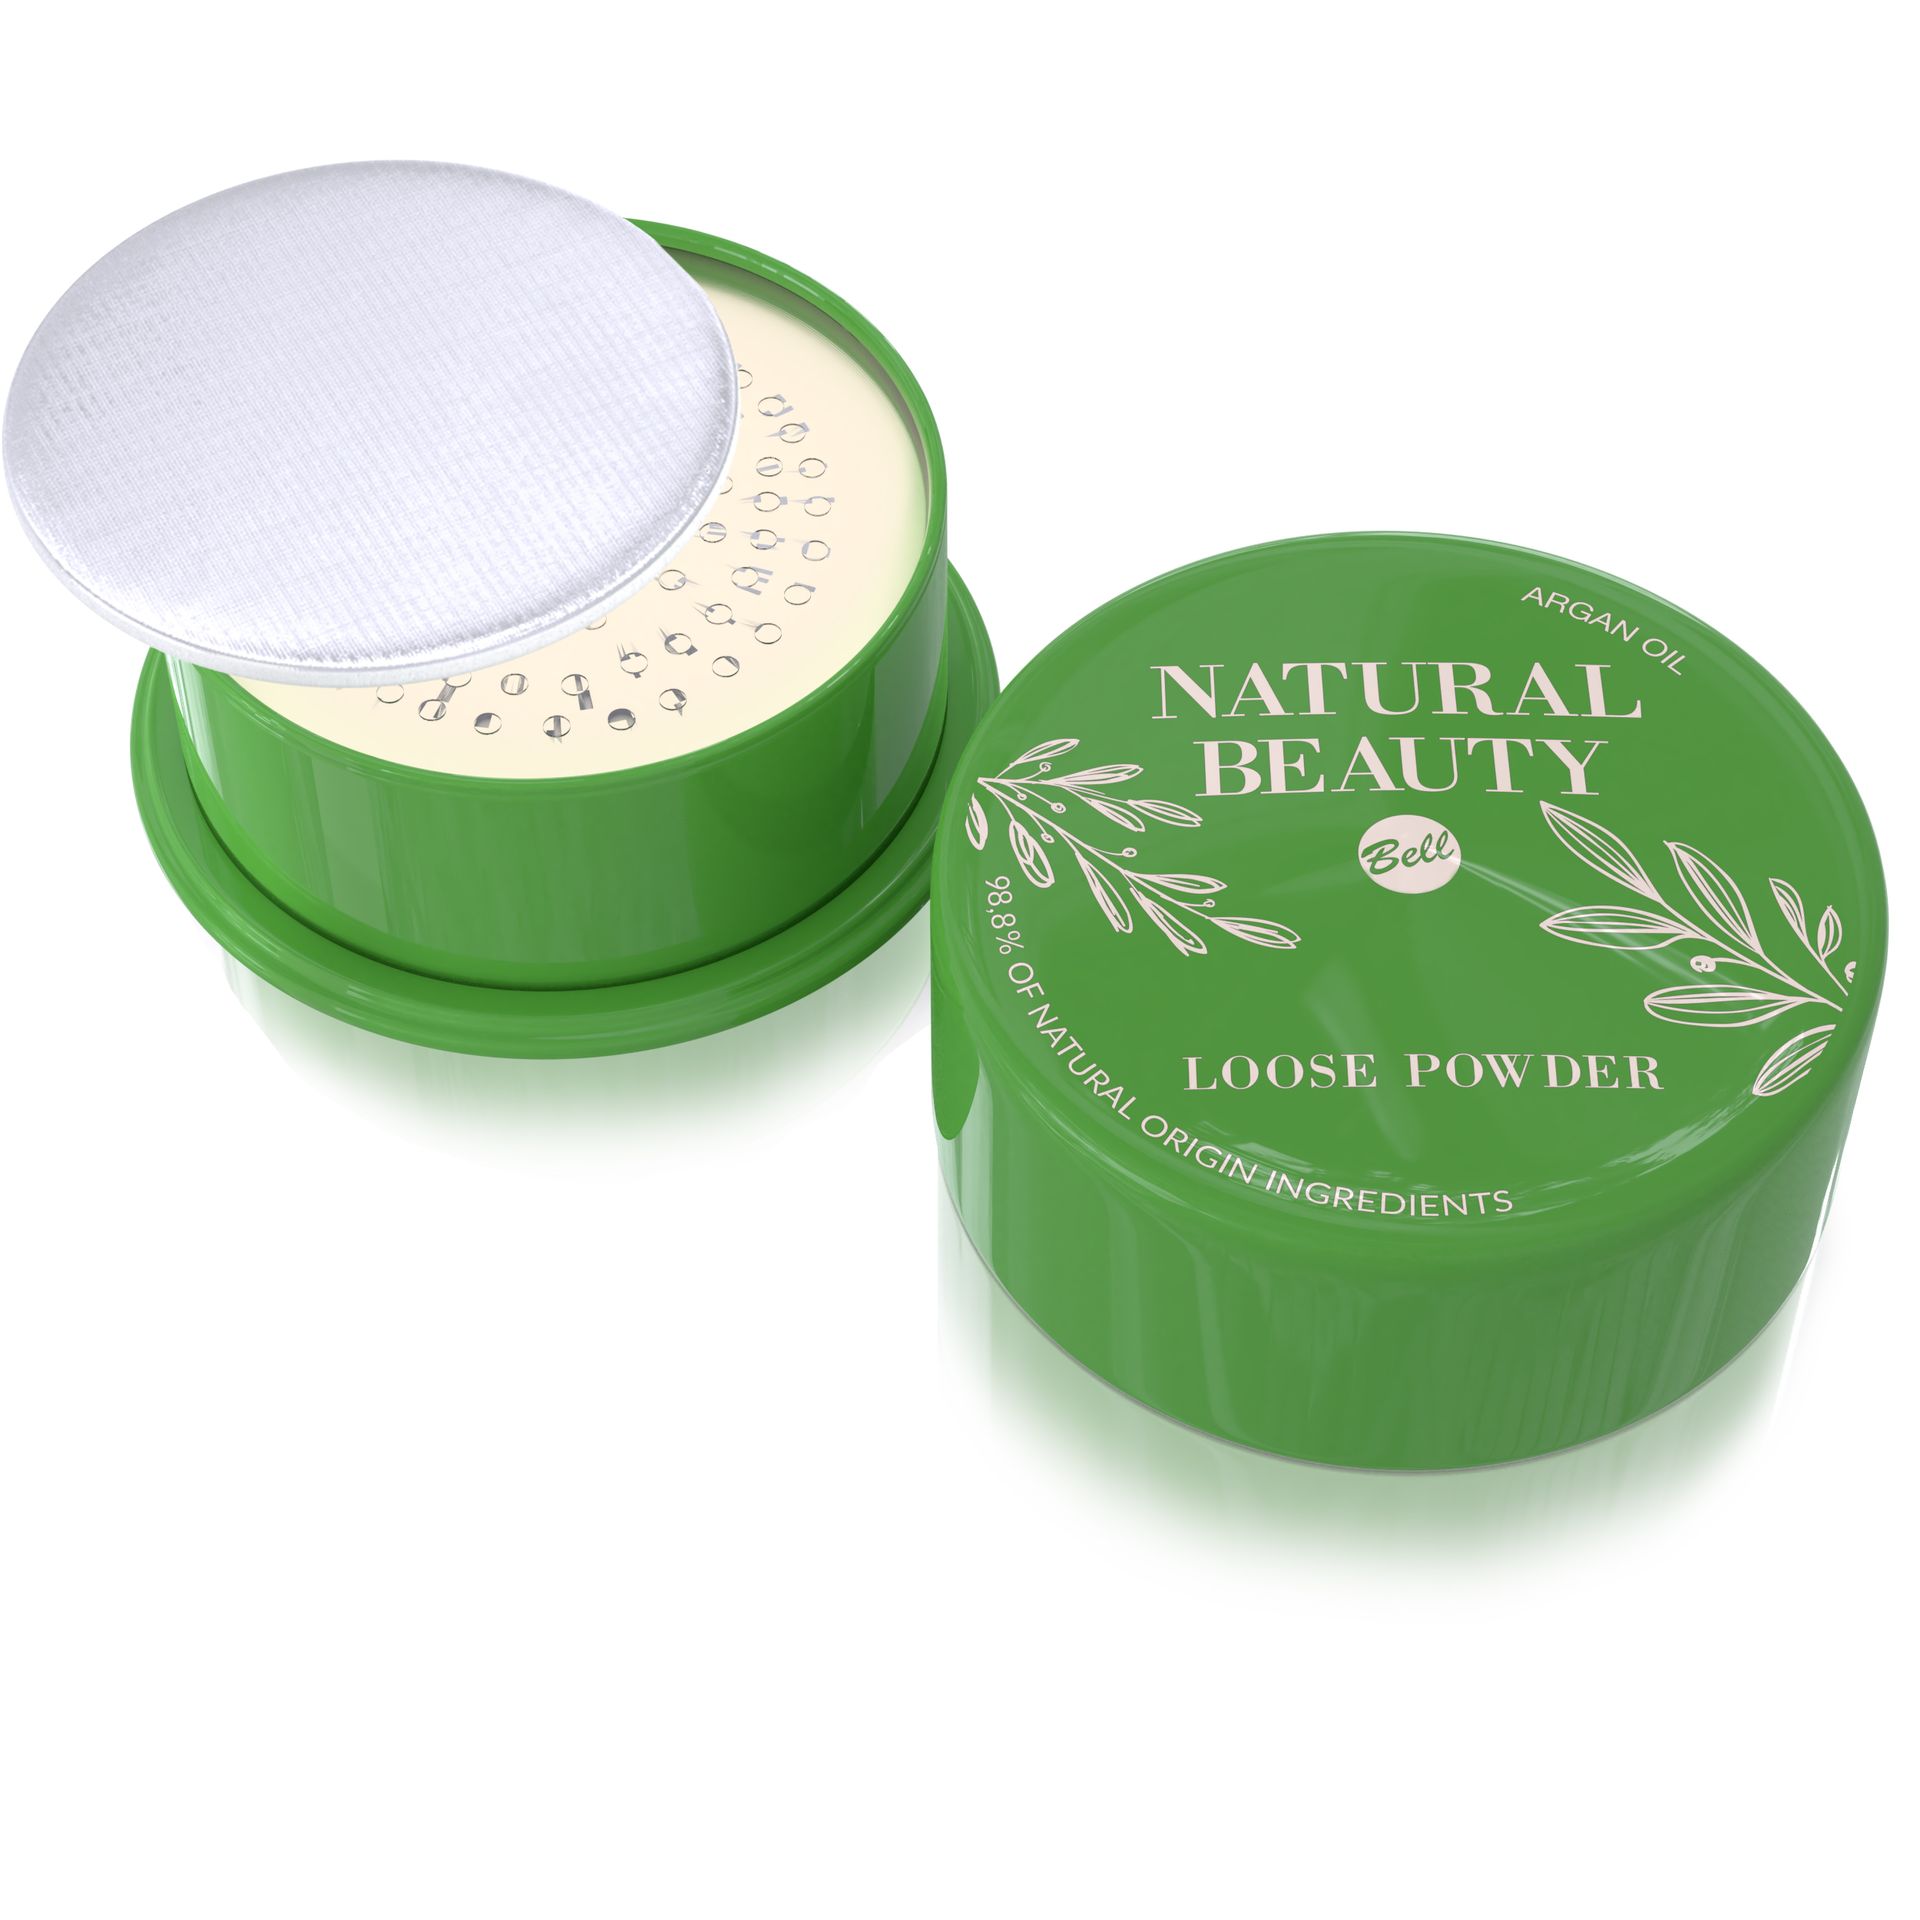 Bell sypki puder NATURAL BEAUTY Natural Beauty Loose Powder 001, 6g